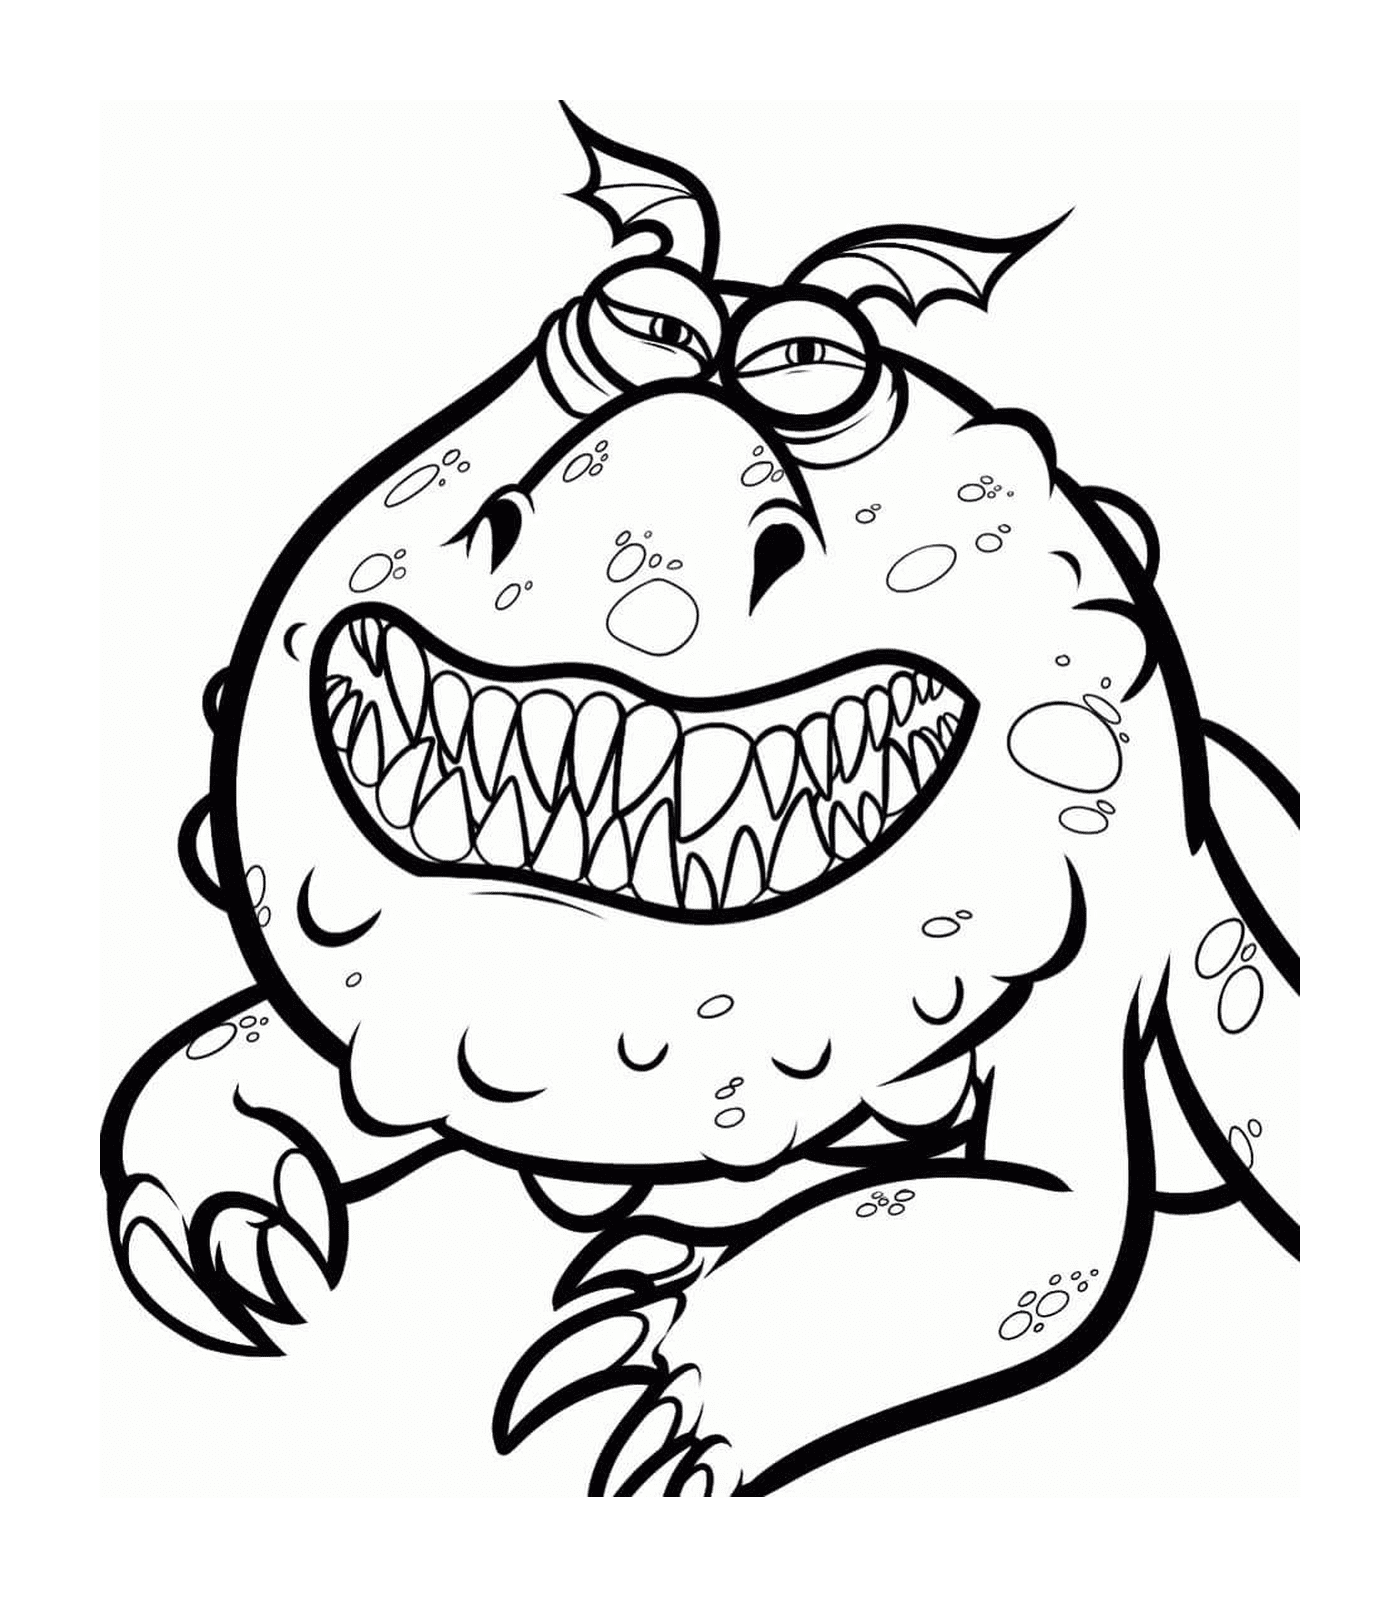  Meatlug, un monstruo con una gran sonrisa 